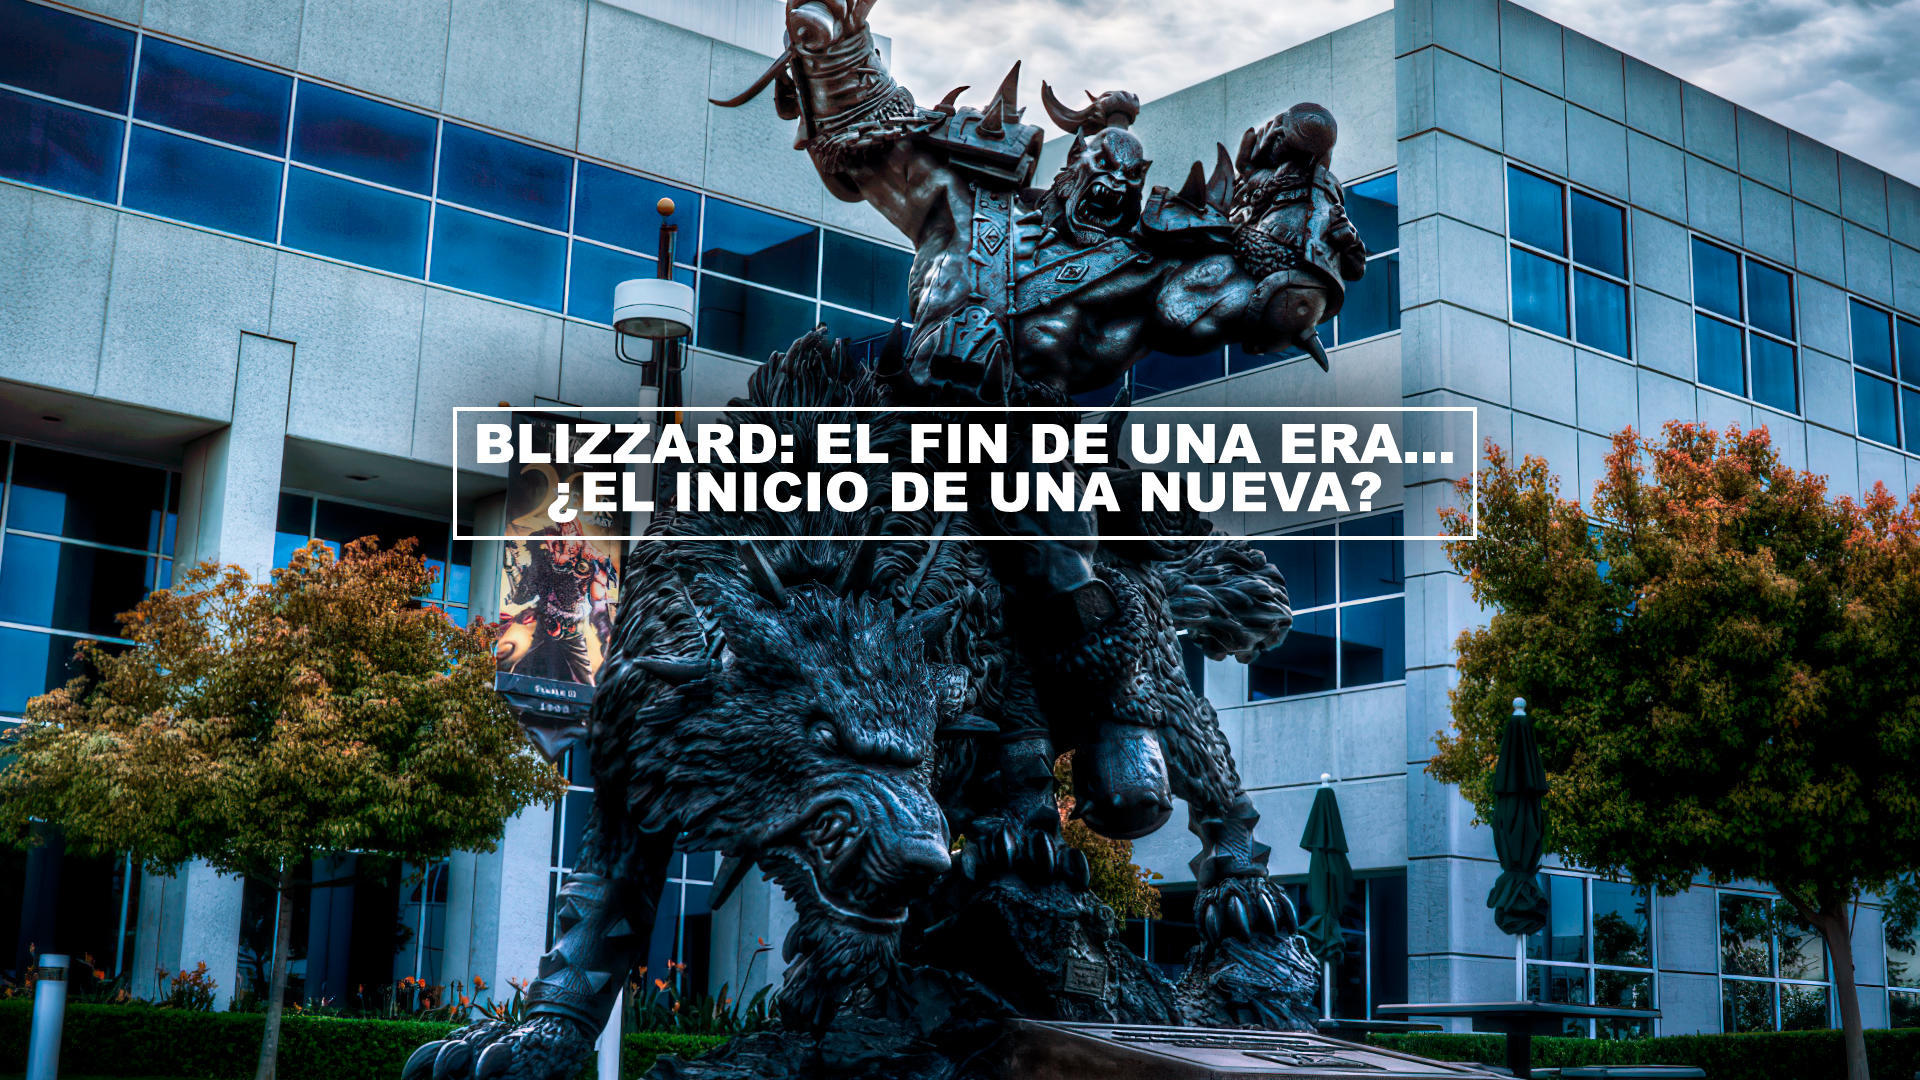 Blizzard: El fin de una era... el inicio de una nueva?